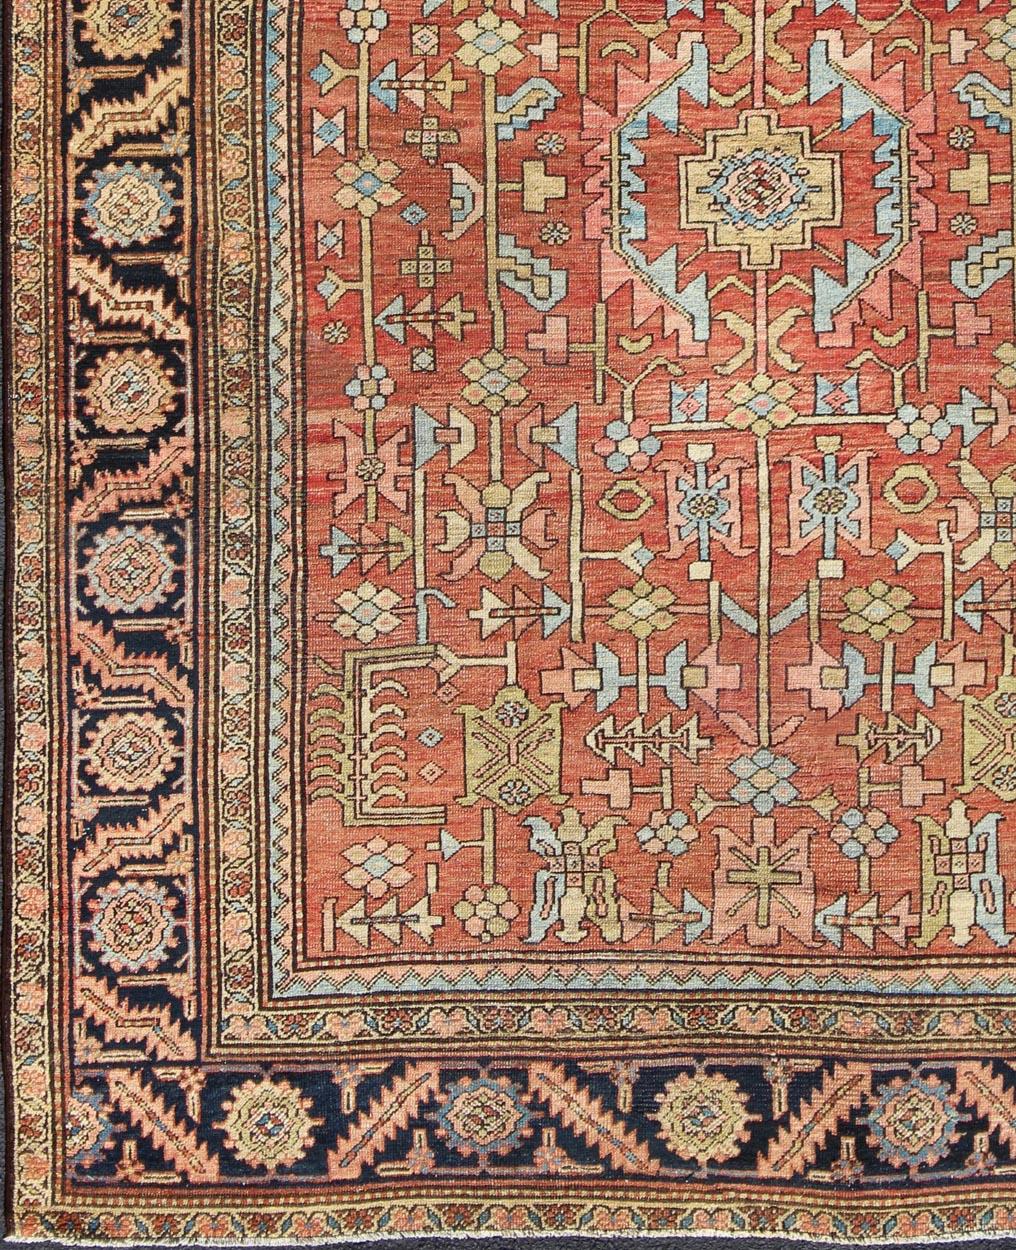 Geometrisches All-Over-Design Antiker Persischer Serapi-Teppich. Keivan Woven Arts / Teppich /S12-0301, Herkunftsland / Art: Iran / Kerman , um 1890.

Maße: 9'5 x 12'8.

Dieser antike persische Serapi aus dem späten 19. Jahrhundert zeigt eine